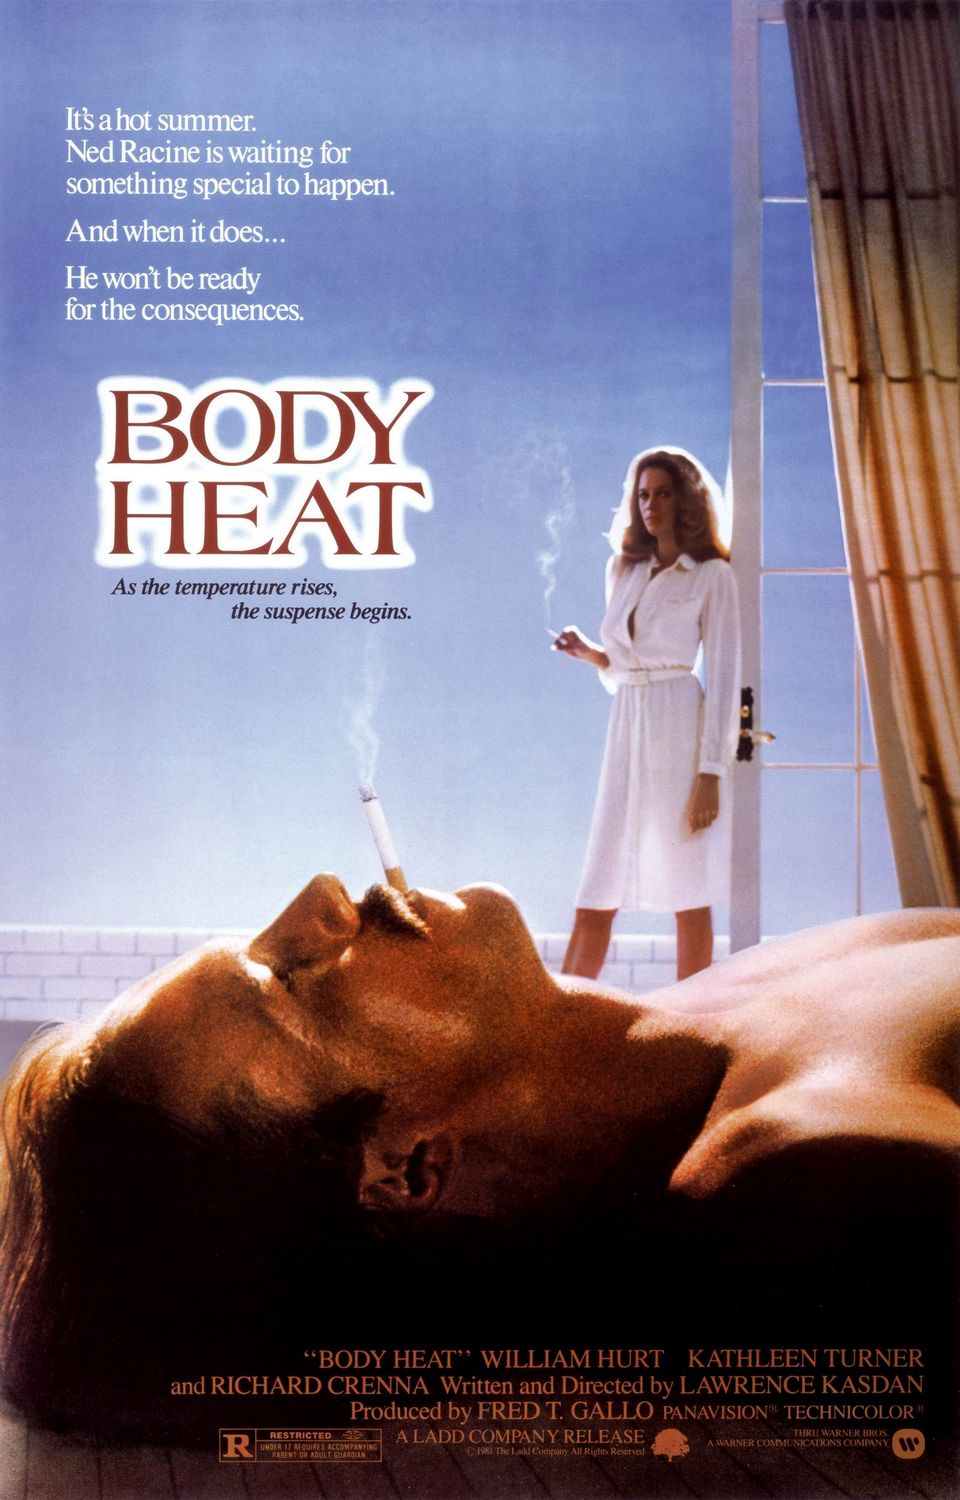 Body Heat 2010 Download - Body Heat 2010 Movie - keenfield